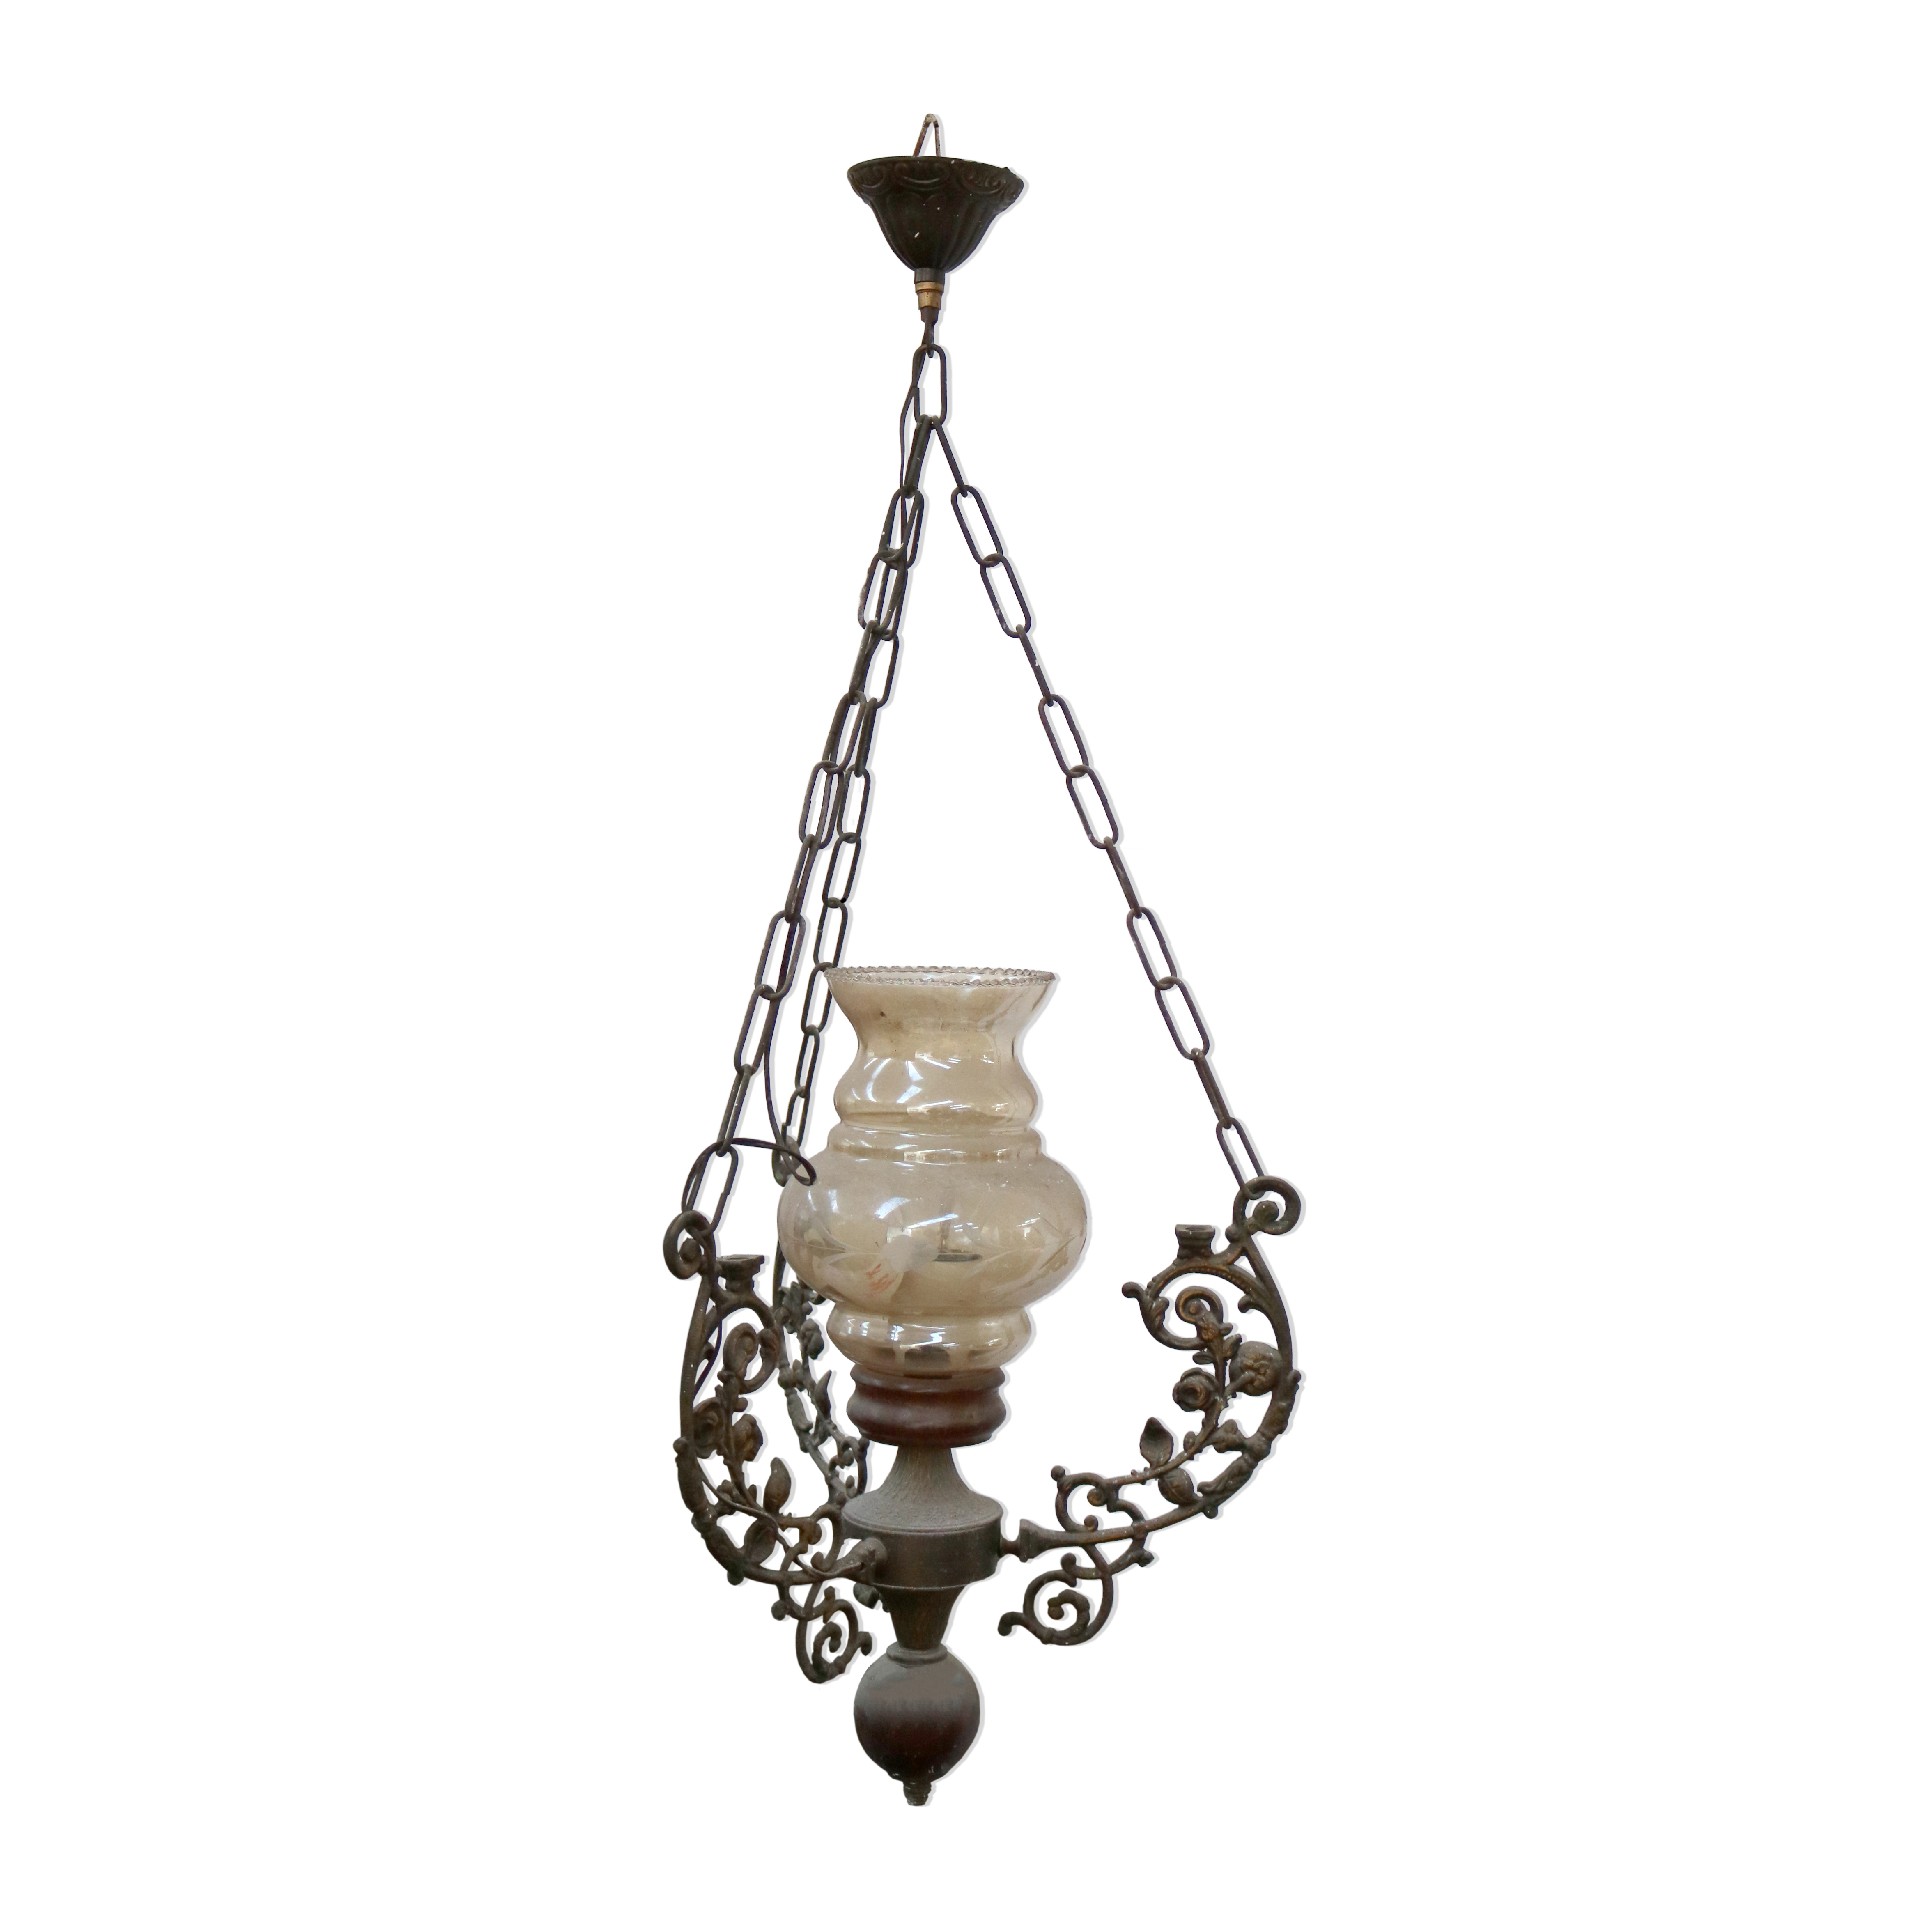 Antico lampadario in ottone. - Lampadari e Candelabri - Mobili antichi - Prodotti - Antichità Fiorillo